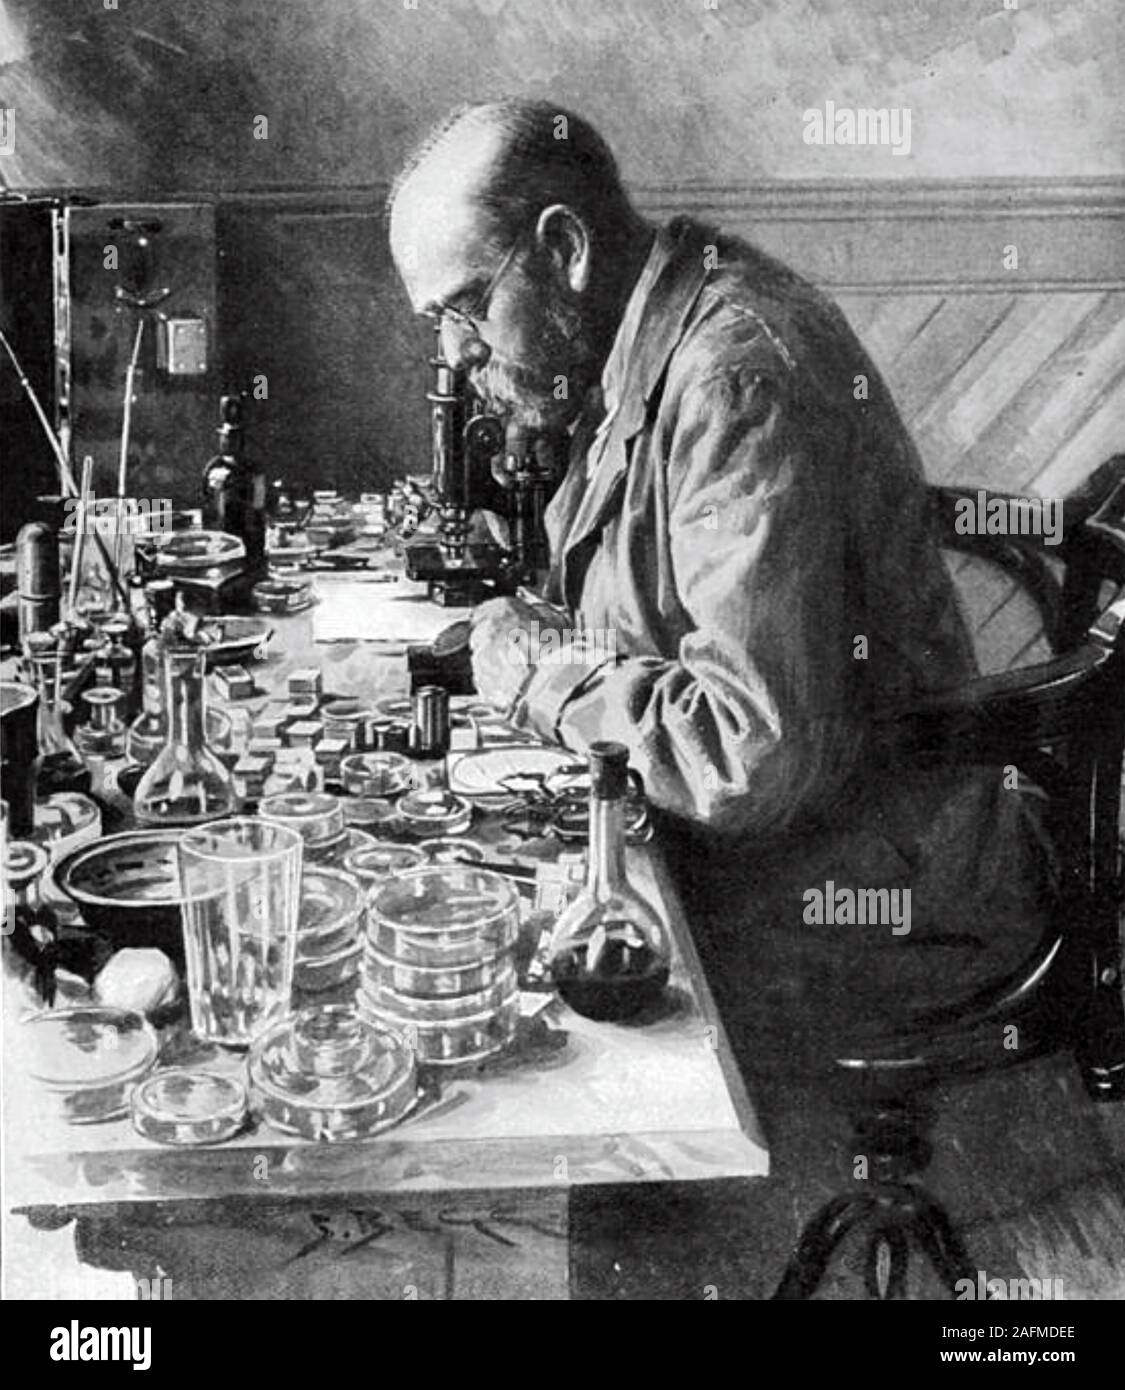 ROBERT KOCH (1843-1910), médecin et microbiologiste allemand Banque D'Images